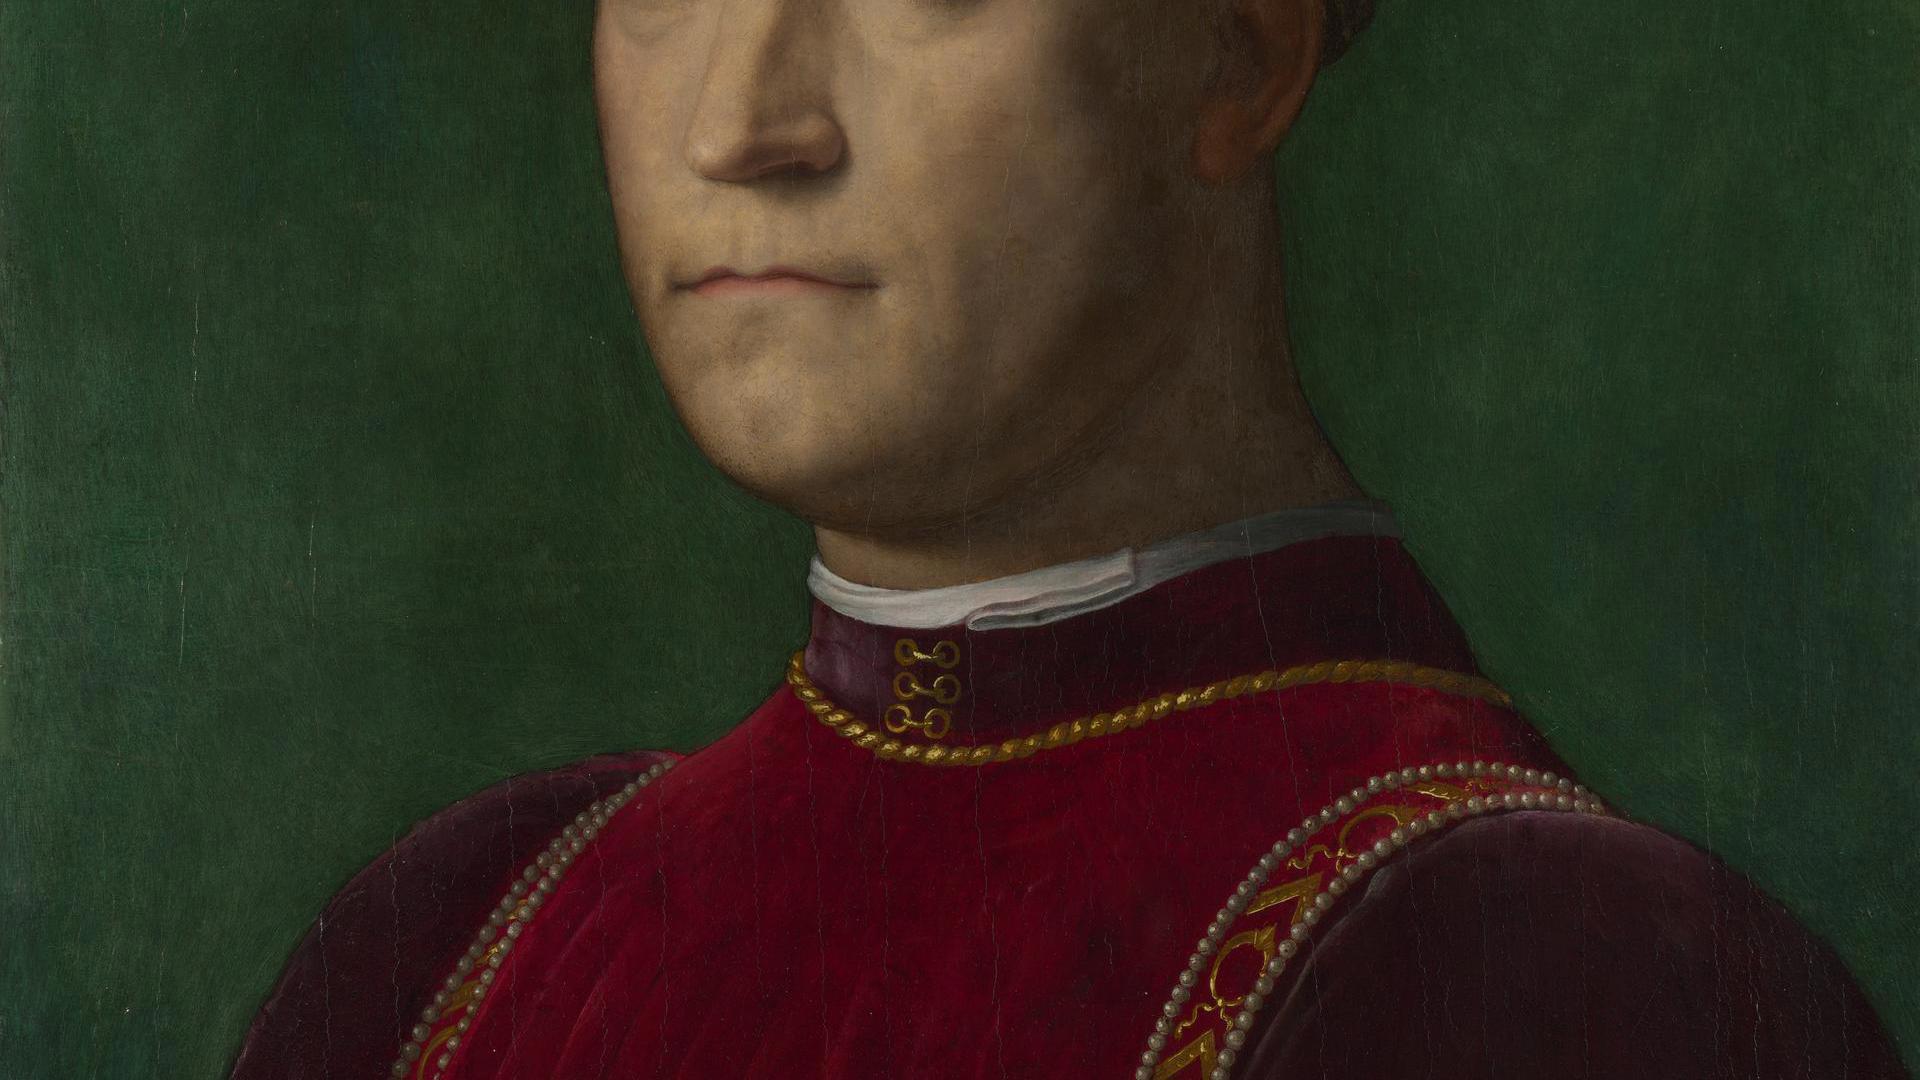 Portrait of Piero de' Medici ('The Gouty') by Bronzino